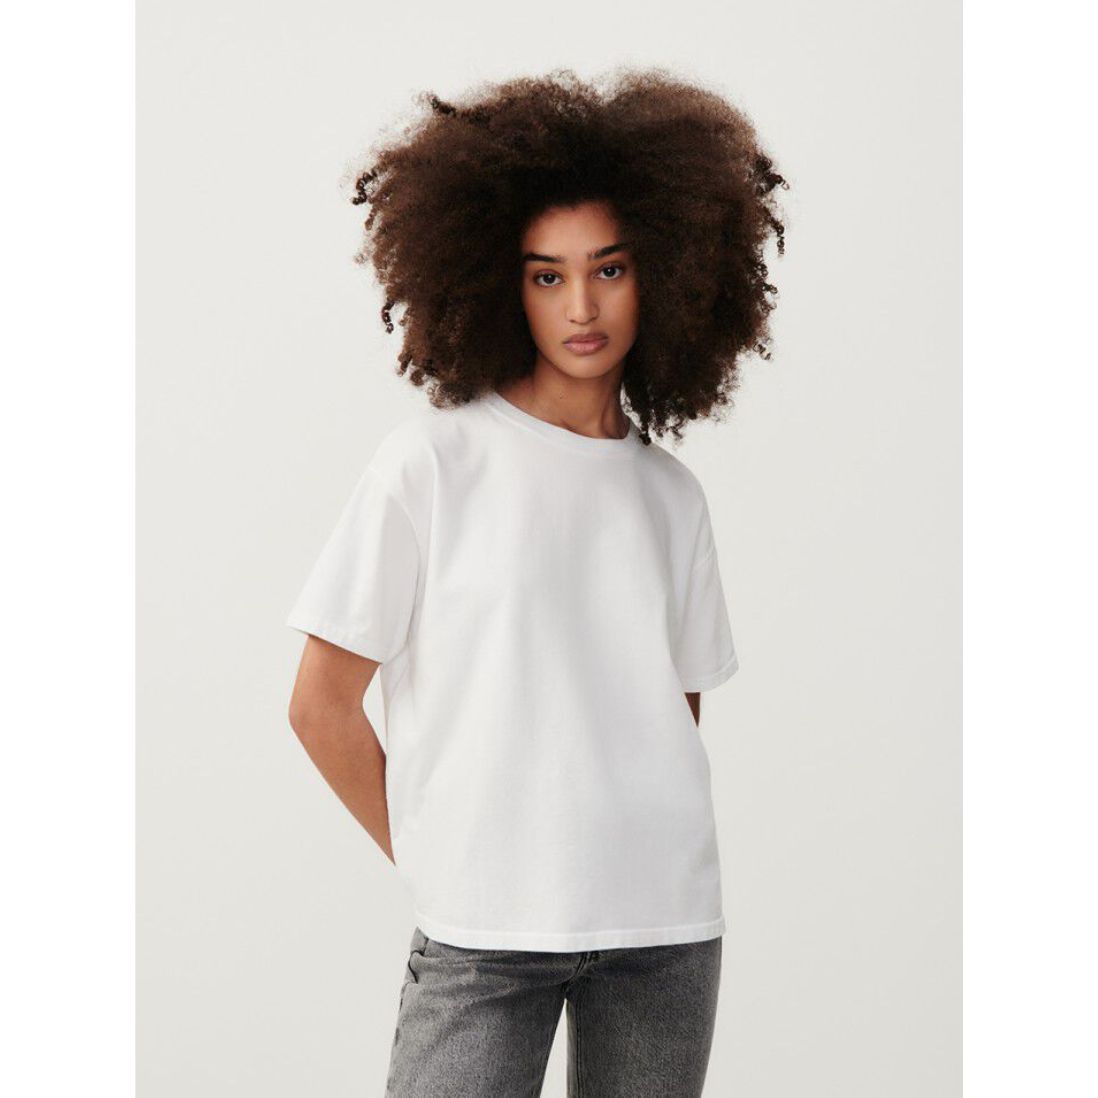 Fizvalley T-shirt White FIZ02